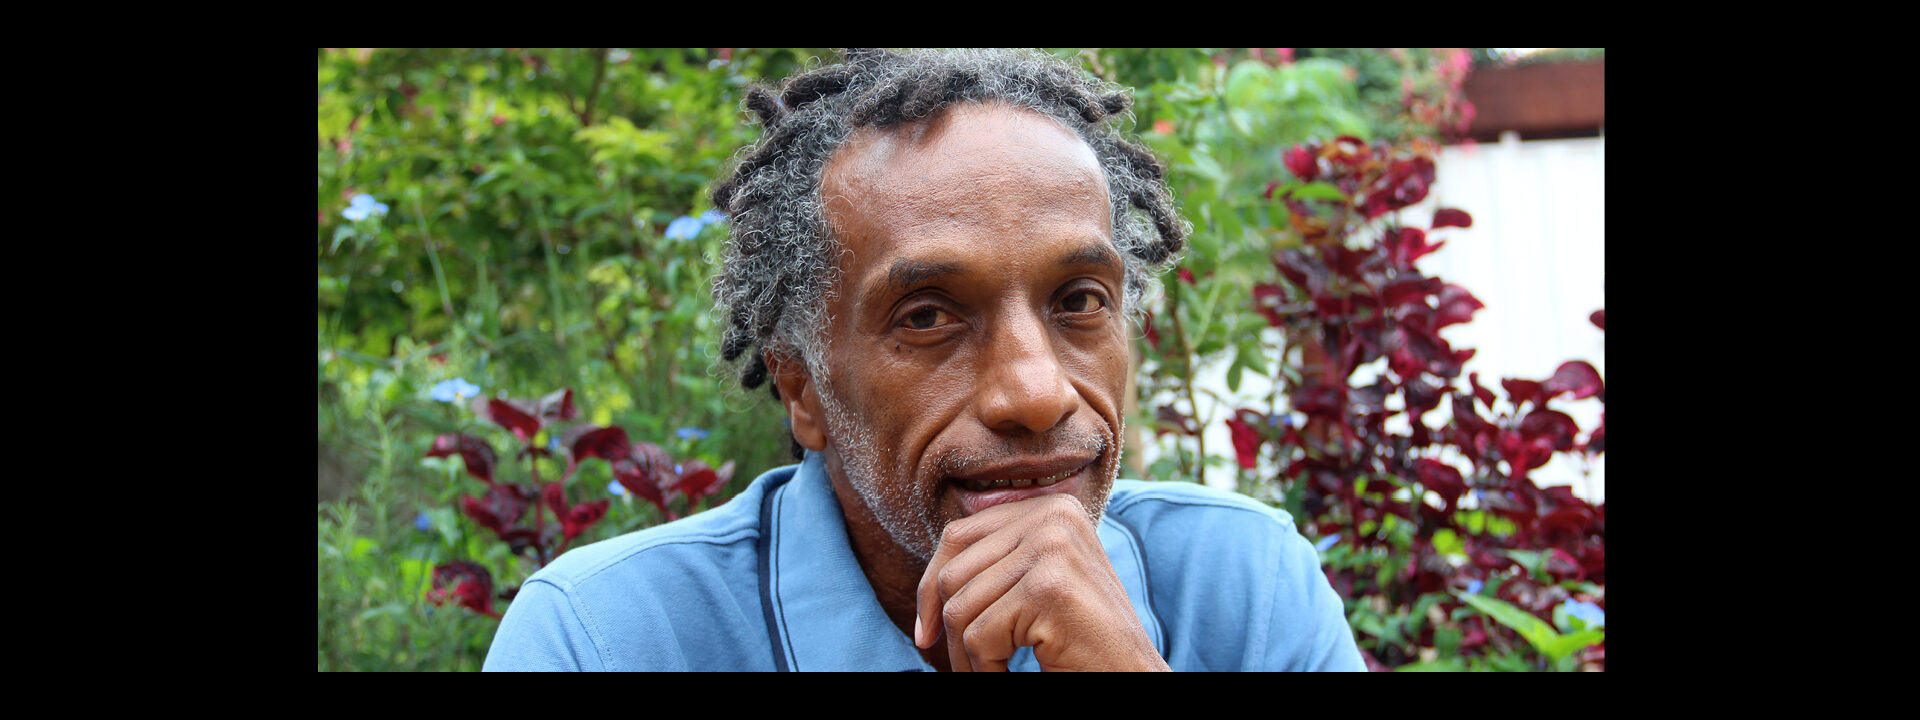 Gil Amâncio: um artista na trilha dos saberes afrodiaspóricos